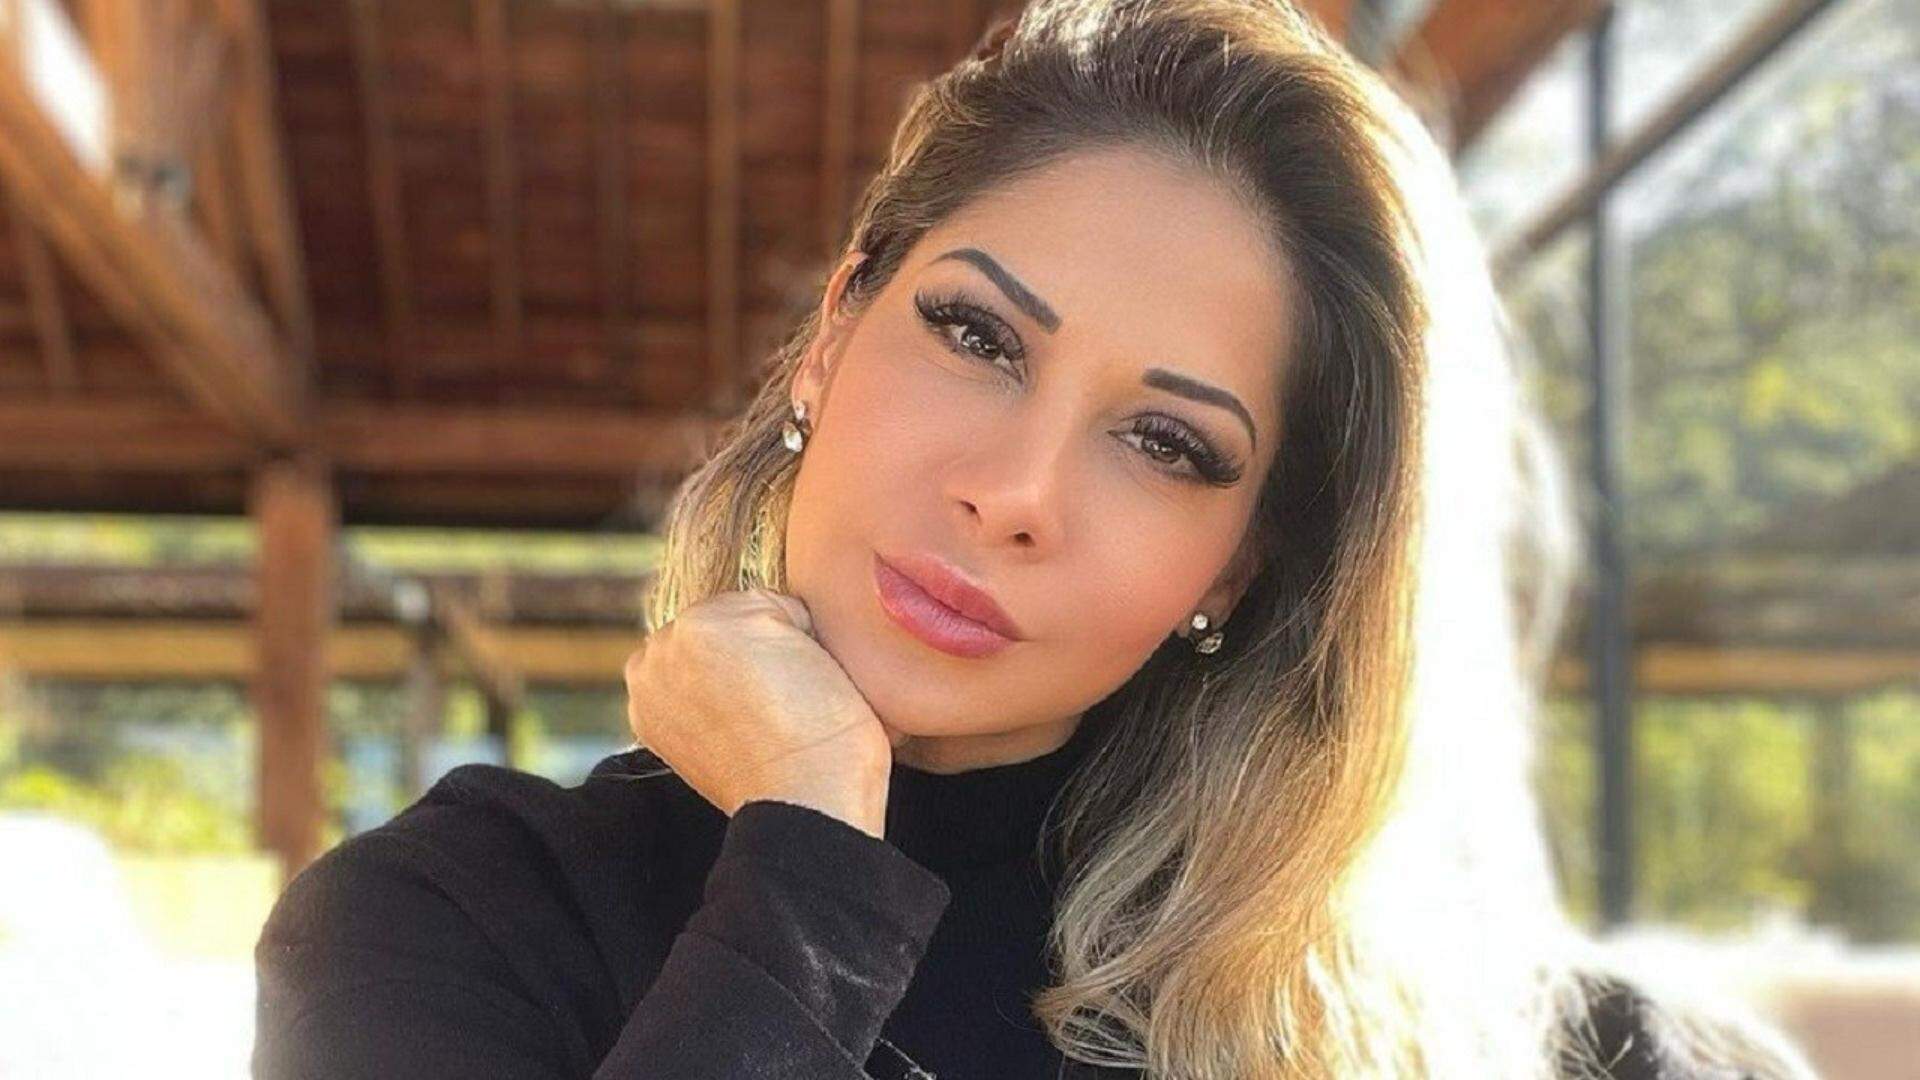 Equipe de Maíra Cardi rebate condenação e revela mais detalhes do processo:”Notícia distorcida” - Metropolitana FM